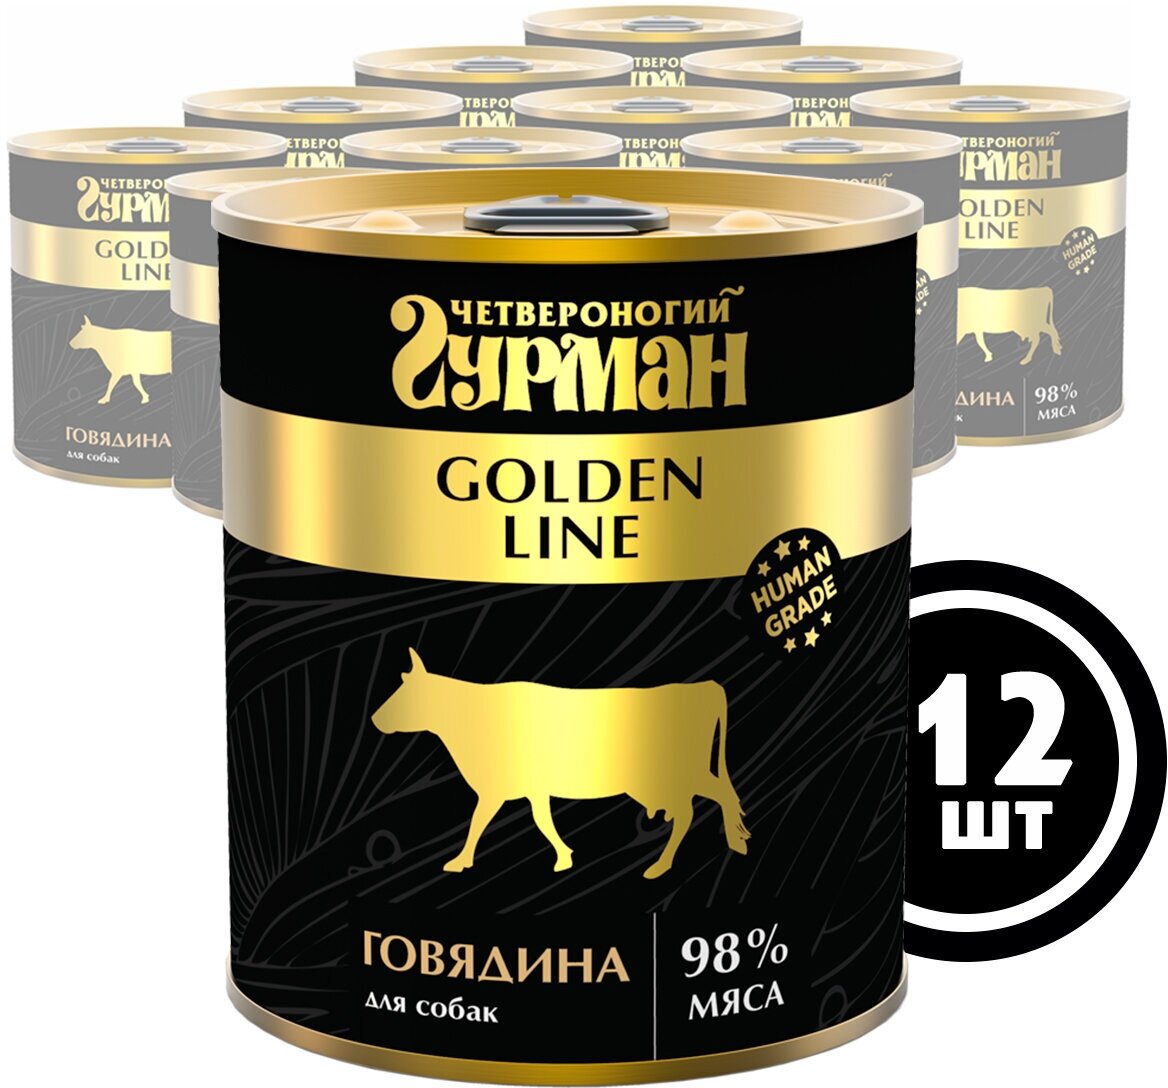 Влажный корм для собак Четвероногий гурман "Golden line Говядина", 340 г х 12 шт.